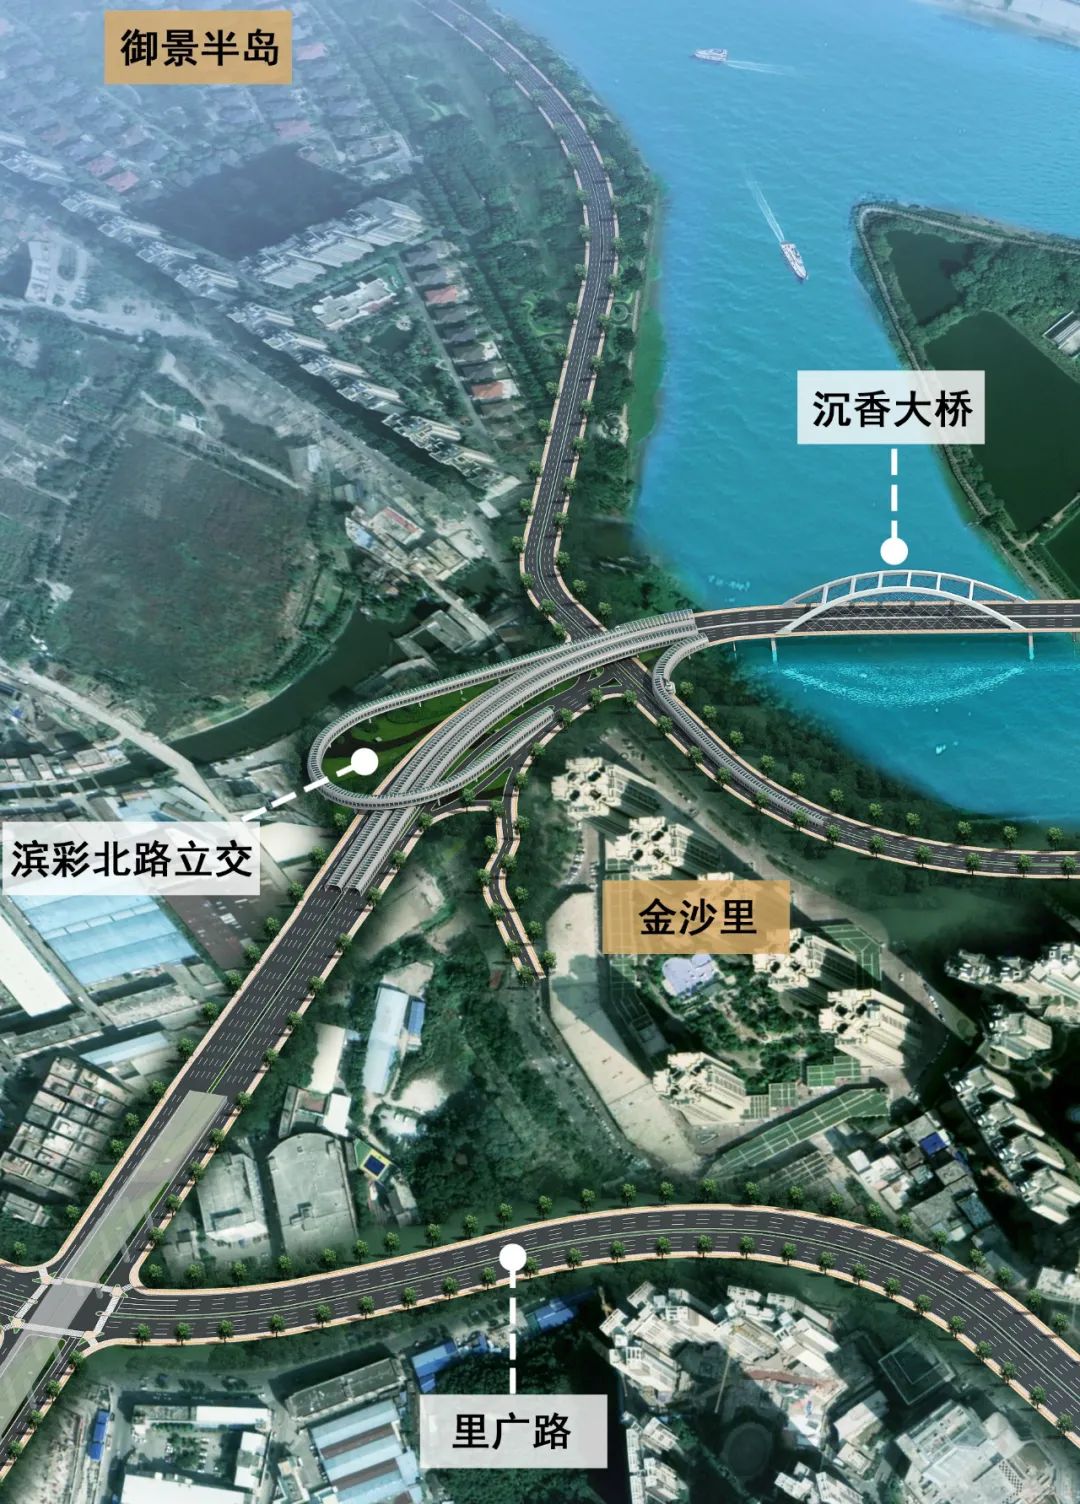 建成后,金沙洲区域车辆通过里广路,彩滨北路立交接入沉香大桥,能够